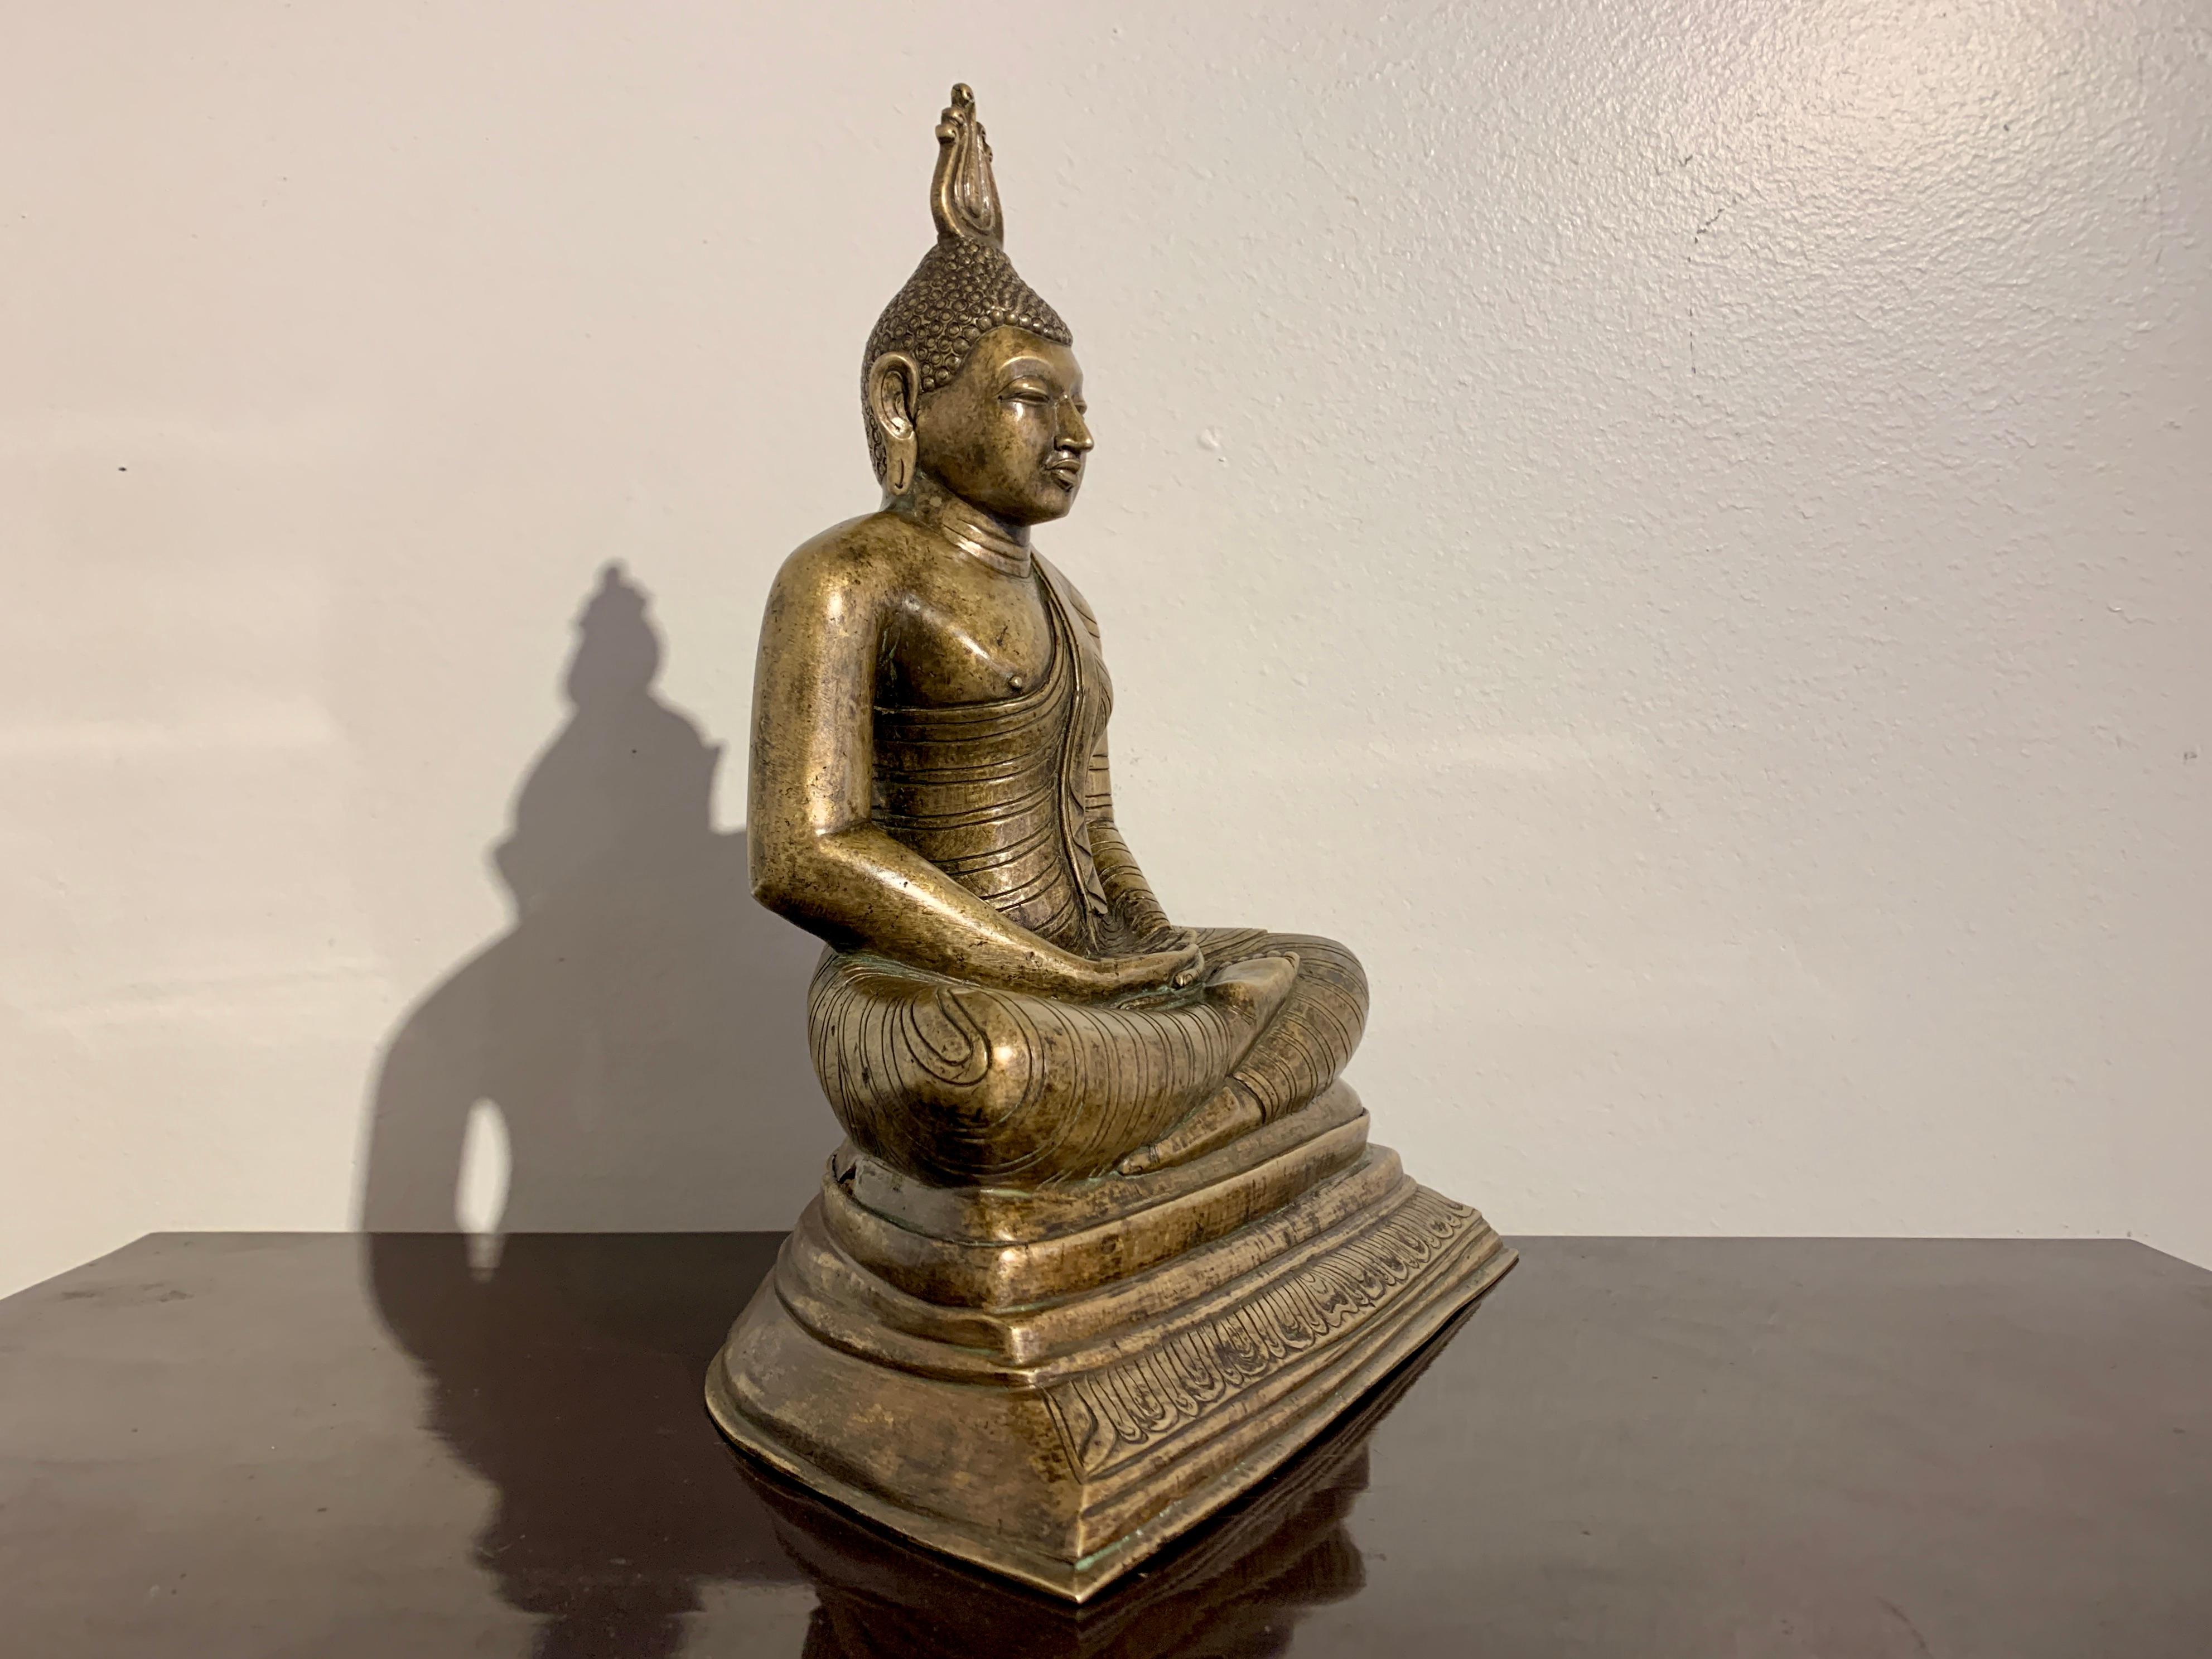 Grande et lourde image en bronze bien coulée du Bouddha assis en méditation, fin ou juste après la période Kandyan (1597 - 1815), début ou milieu du XIXe siècle, Sri Lanka.

Le Bouddha est assis sur une base trapézoïdale à plusieurs niveaux, avec